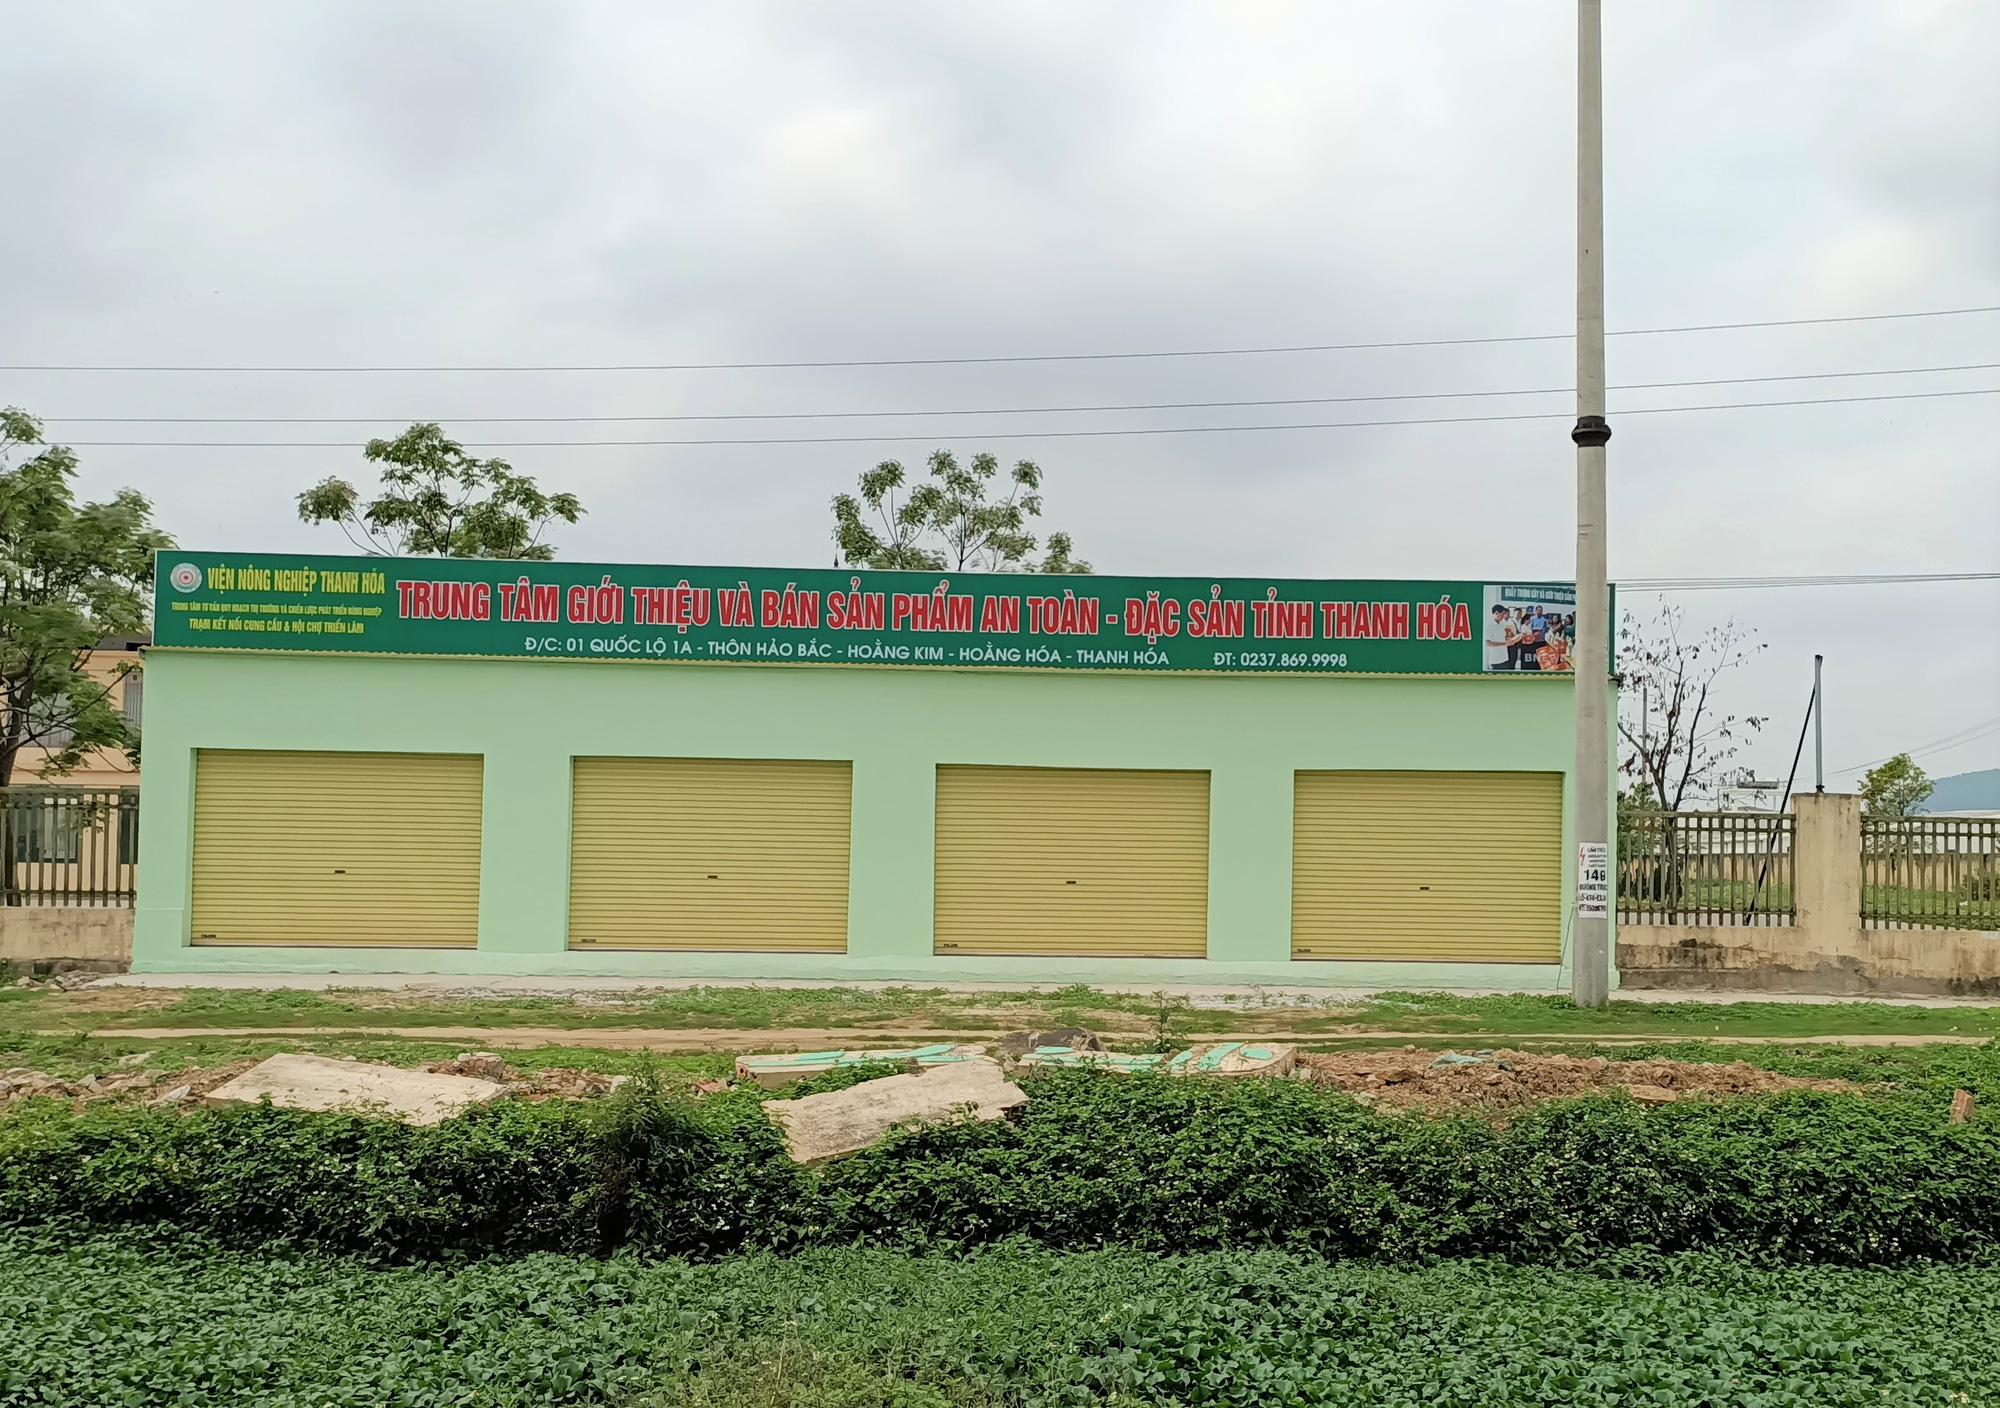 Trung tâm nông nghiệp 17 tỉ đồng ở Thanh Hóa xây xong để làm... cảnh - Ảnh 20.